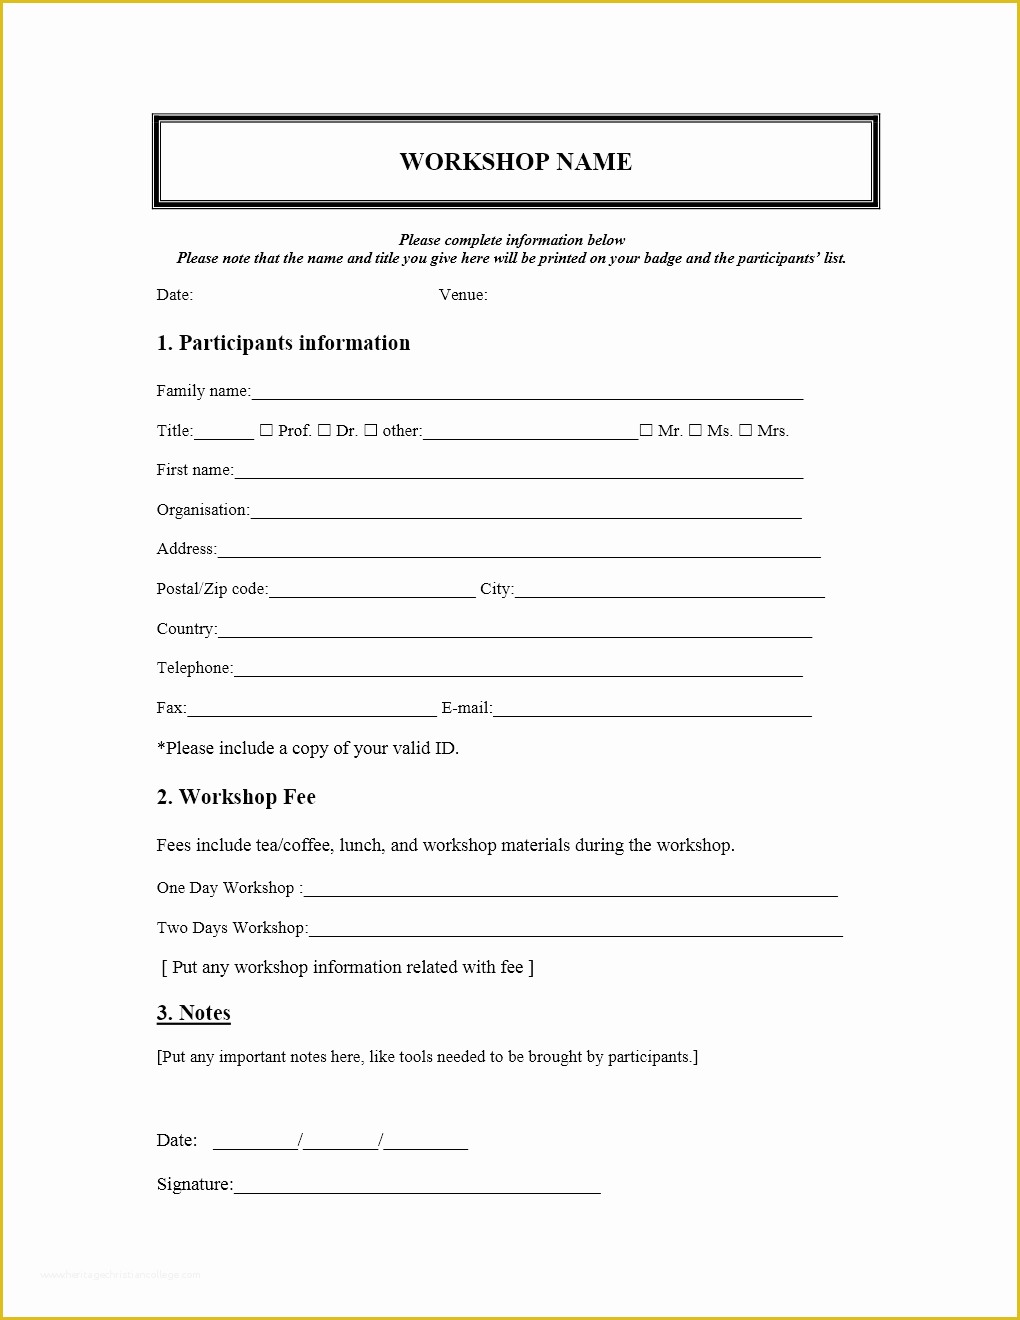 Registration form Template Word Free Download Of Workshop Registration form